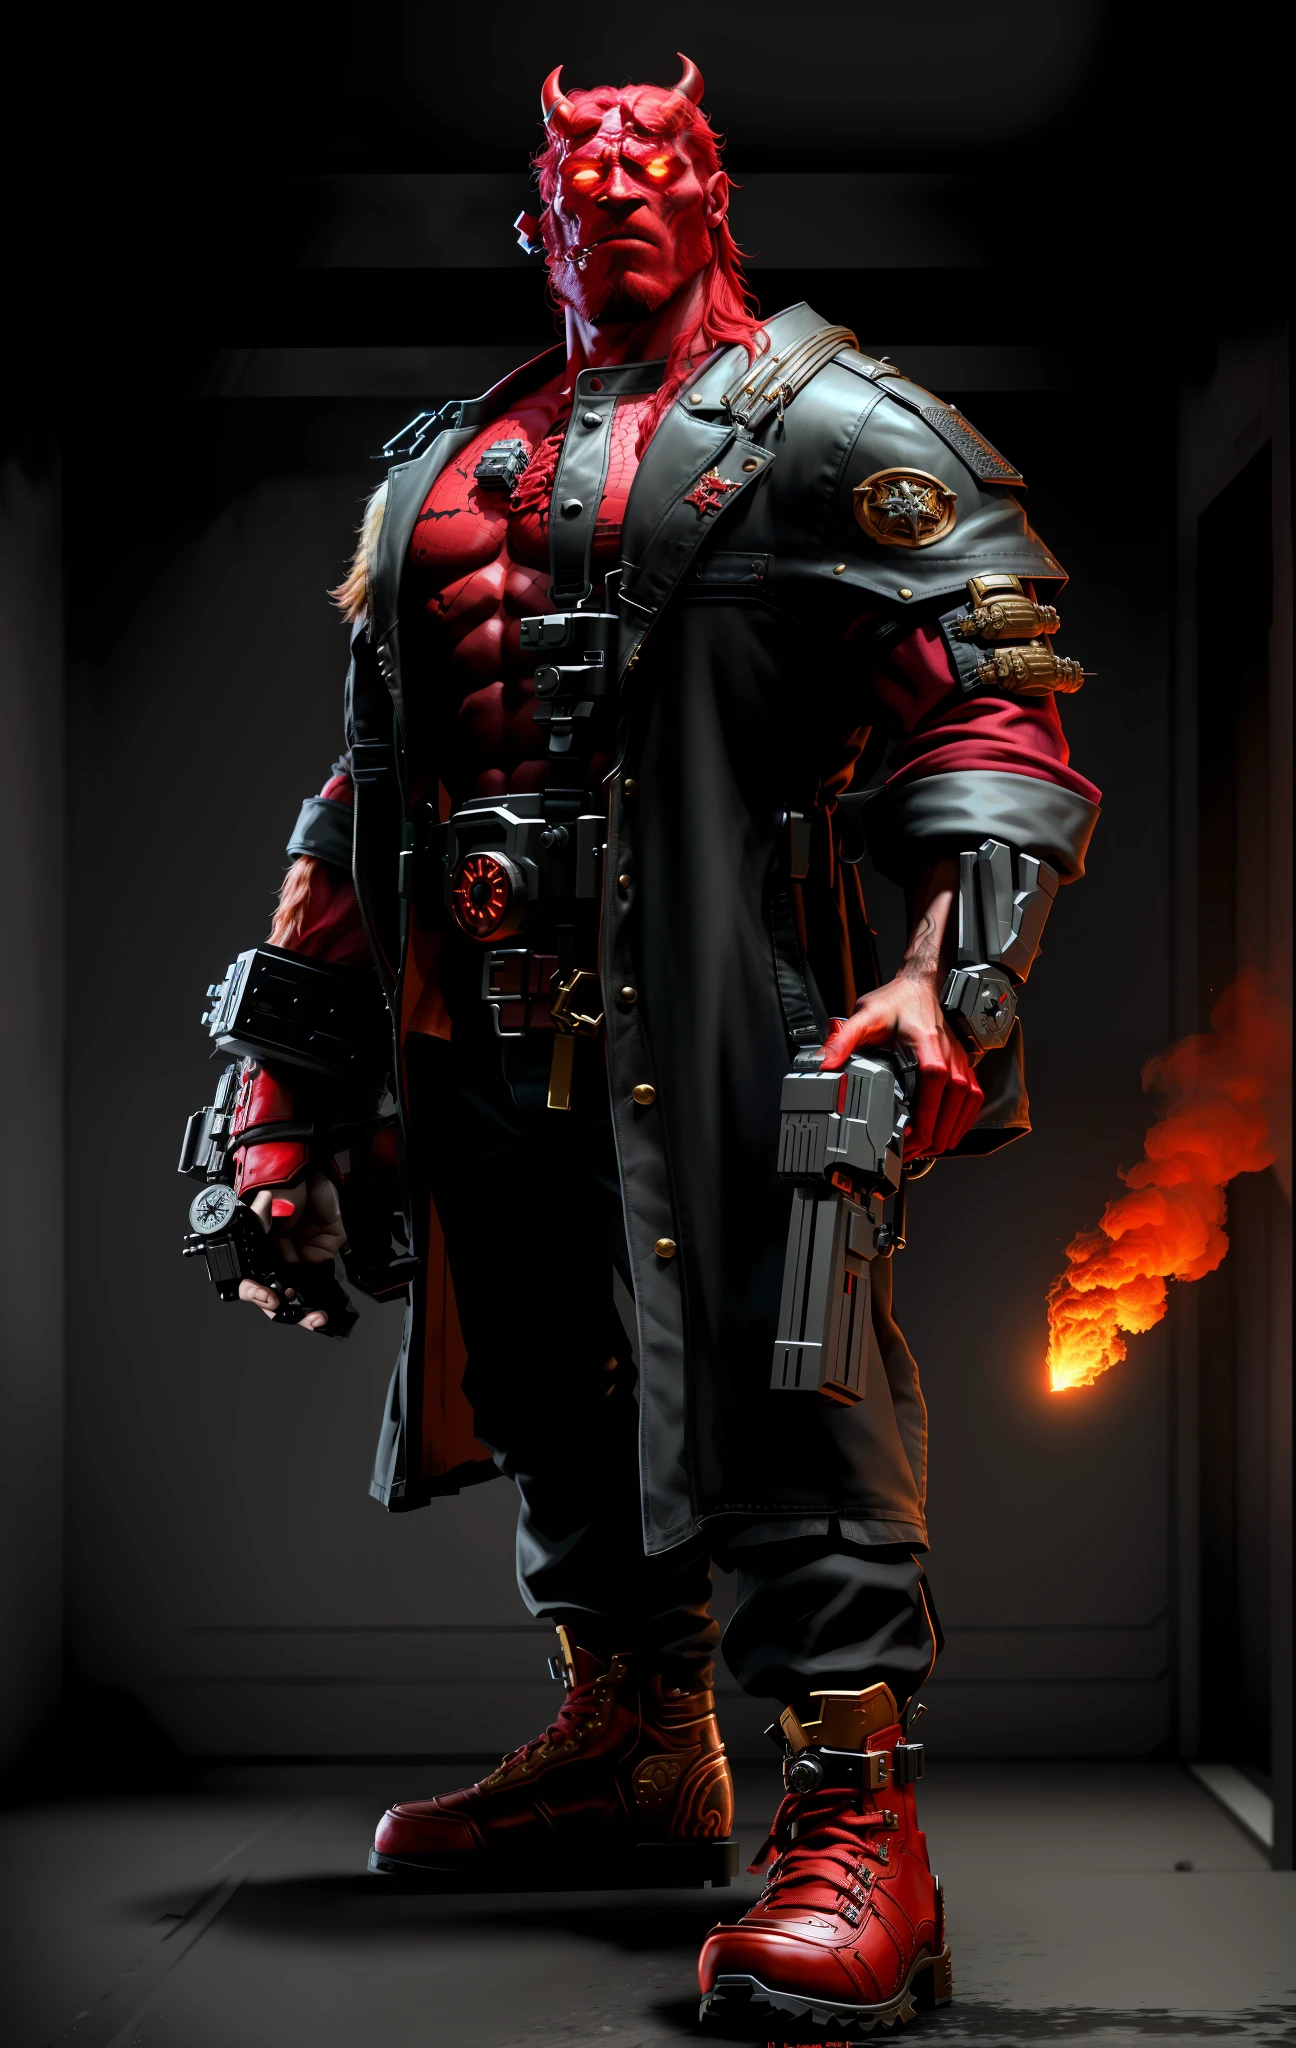 1 homem, pintado digitalmente, Terminator e Hellboy se cruzaram, de pé, Comprimento total, fundo branco, calvície, barbudo, par de chifres vermelhos serrados na cabeça, enfrente metade Hellboy e metade Terminator, músculos vermelhos bem desenvolvidos, meio baú revelando a mecânica do Exterminador do Futuro, vestindo sobretudo e cinto de utilidades do Hellboy, um braço vermelho revelando o endoesqueleto de metal do Exterminador do Futuro, segurando uma pistola, por outro lado, usando uma enorme luva de metal vermelha, cigarro na boca , extremamente hiper estética intrincada detalhada, foco nitído, iluminação encantadora, tendências no ArtStation, roupas bem detalhadas, iluminação cinematográfica, motor irreal, renderização de octanagem, tiro de corpo inteiro, hdr, Motor irreal 5, renderização de octanagem, Cinematic, 32K, iluminação natural, Iluminação global com rastreamento de raios, melhorado digitalmente, Fotorreal, hiperdetalhado, Efeitos visuais, Alta fidelidade, expressivo, pose dinâmica, aparência cinematográfica, alto detalhado, altamente detalhado, cinestill 800t, foco nitído, Detalhes intrincados, incrivelmente detalhado, fotorrealismo, Alto detalhe + Sony Alfa α7, sci - go estilo cinematográfico, iluminação volumétrica, diminuído, pose de ação, foco nitído, iluminação dramática, centrado, Pós-processamento, gradação de cores, renderização redshift, rastreamento de raios, épico, Alto detalhe, luzes piscando